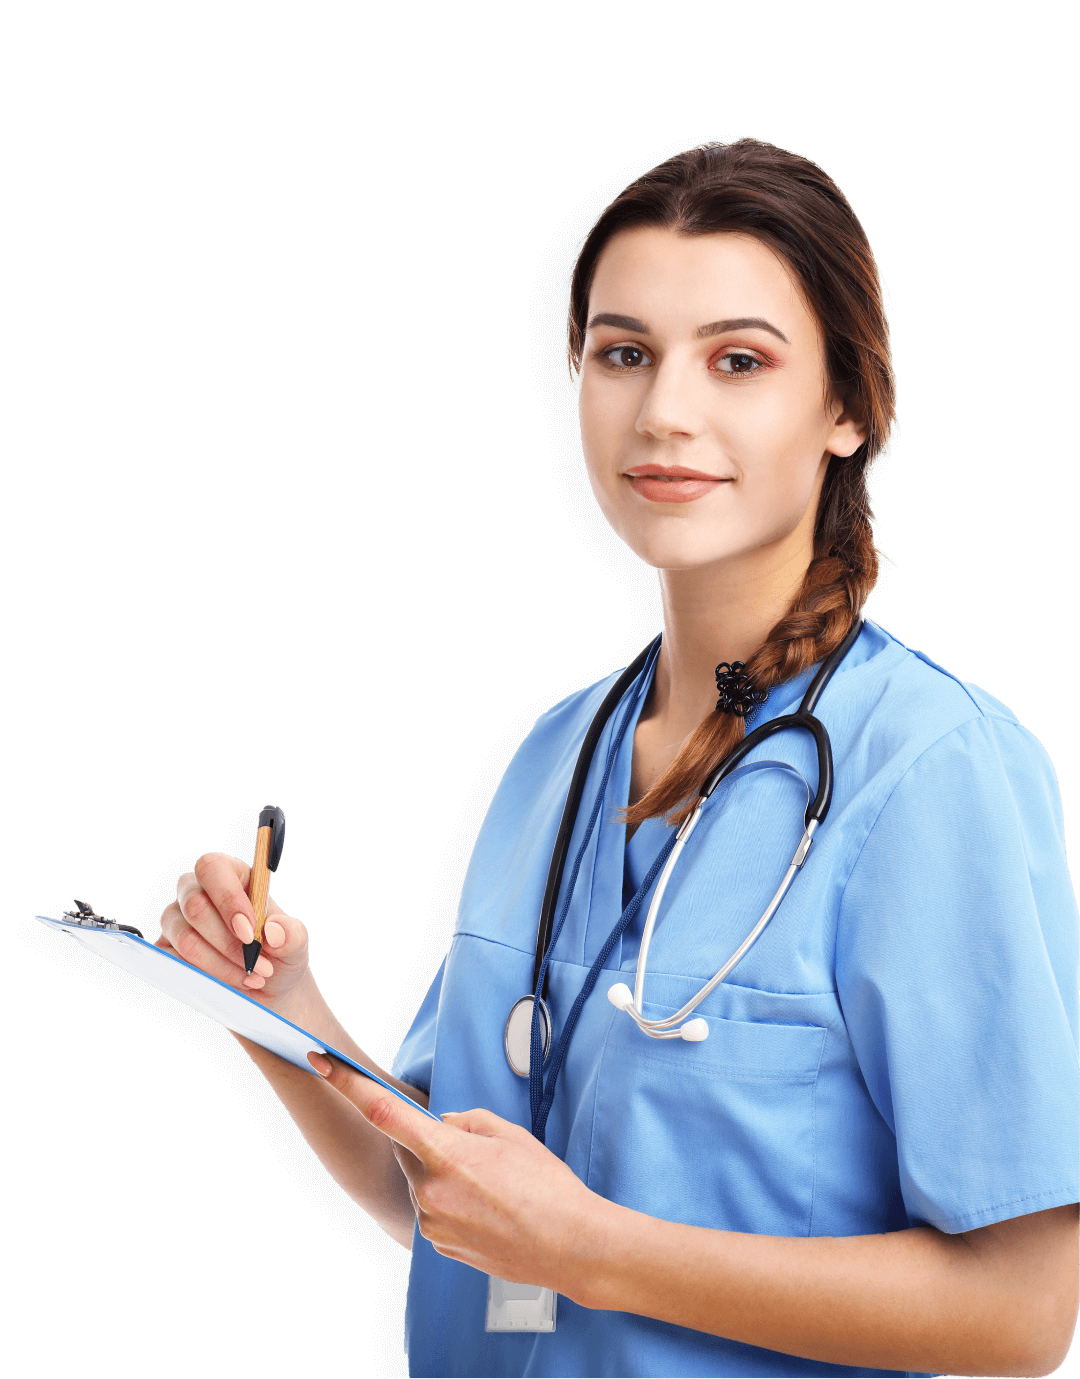 Nurse-Certified Executive Nursing Practice Administrator (NE NEA) professional